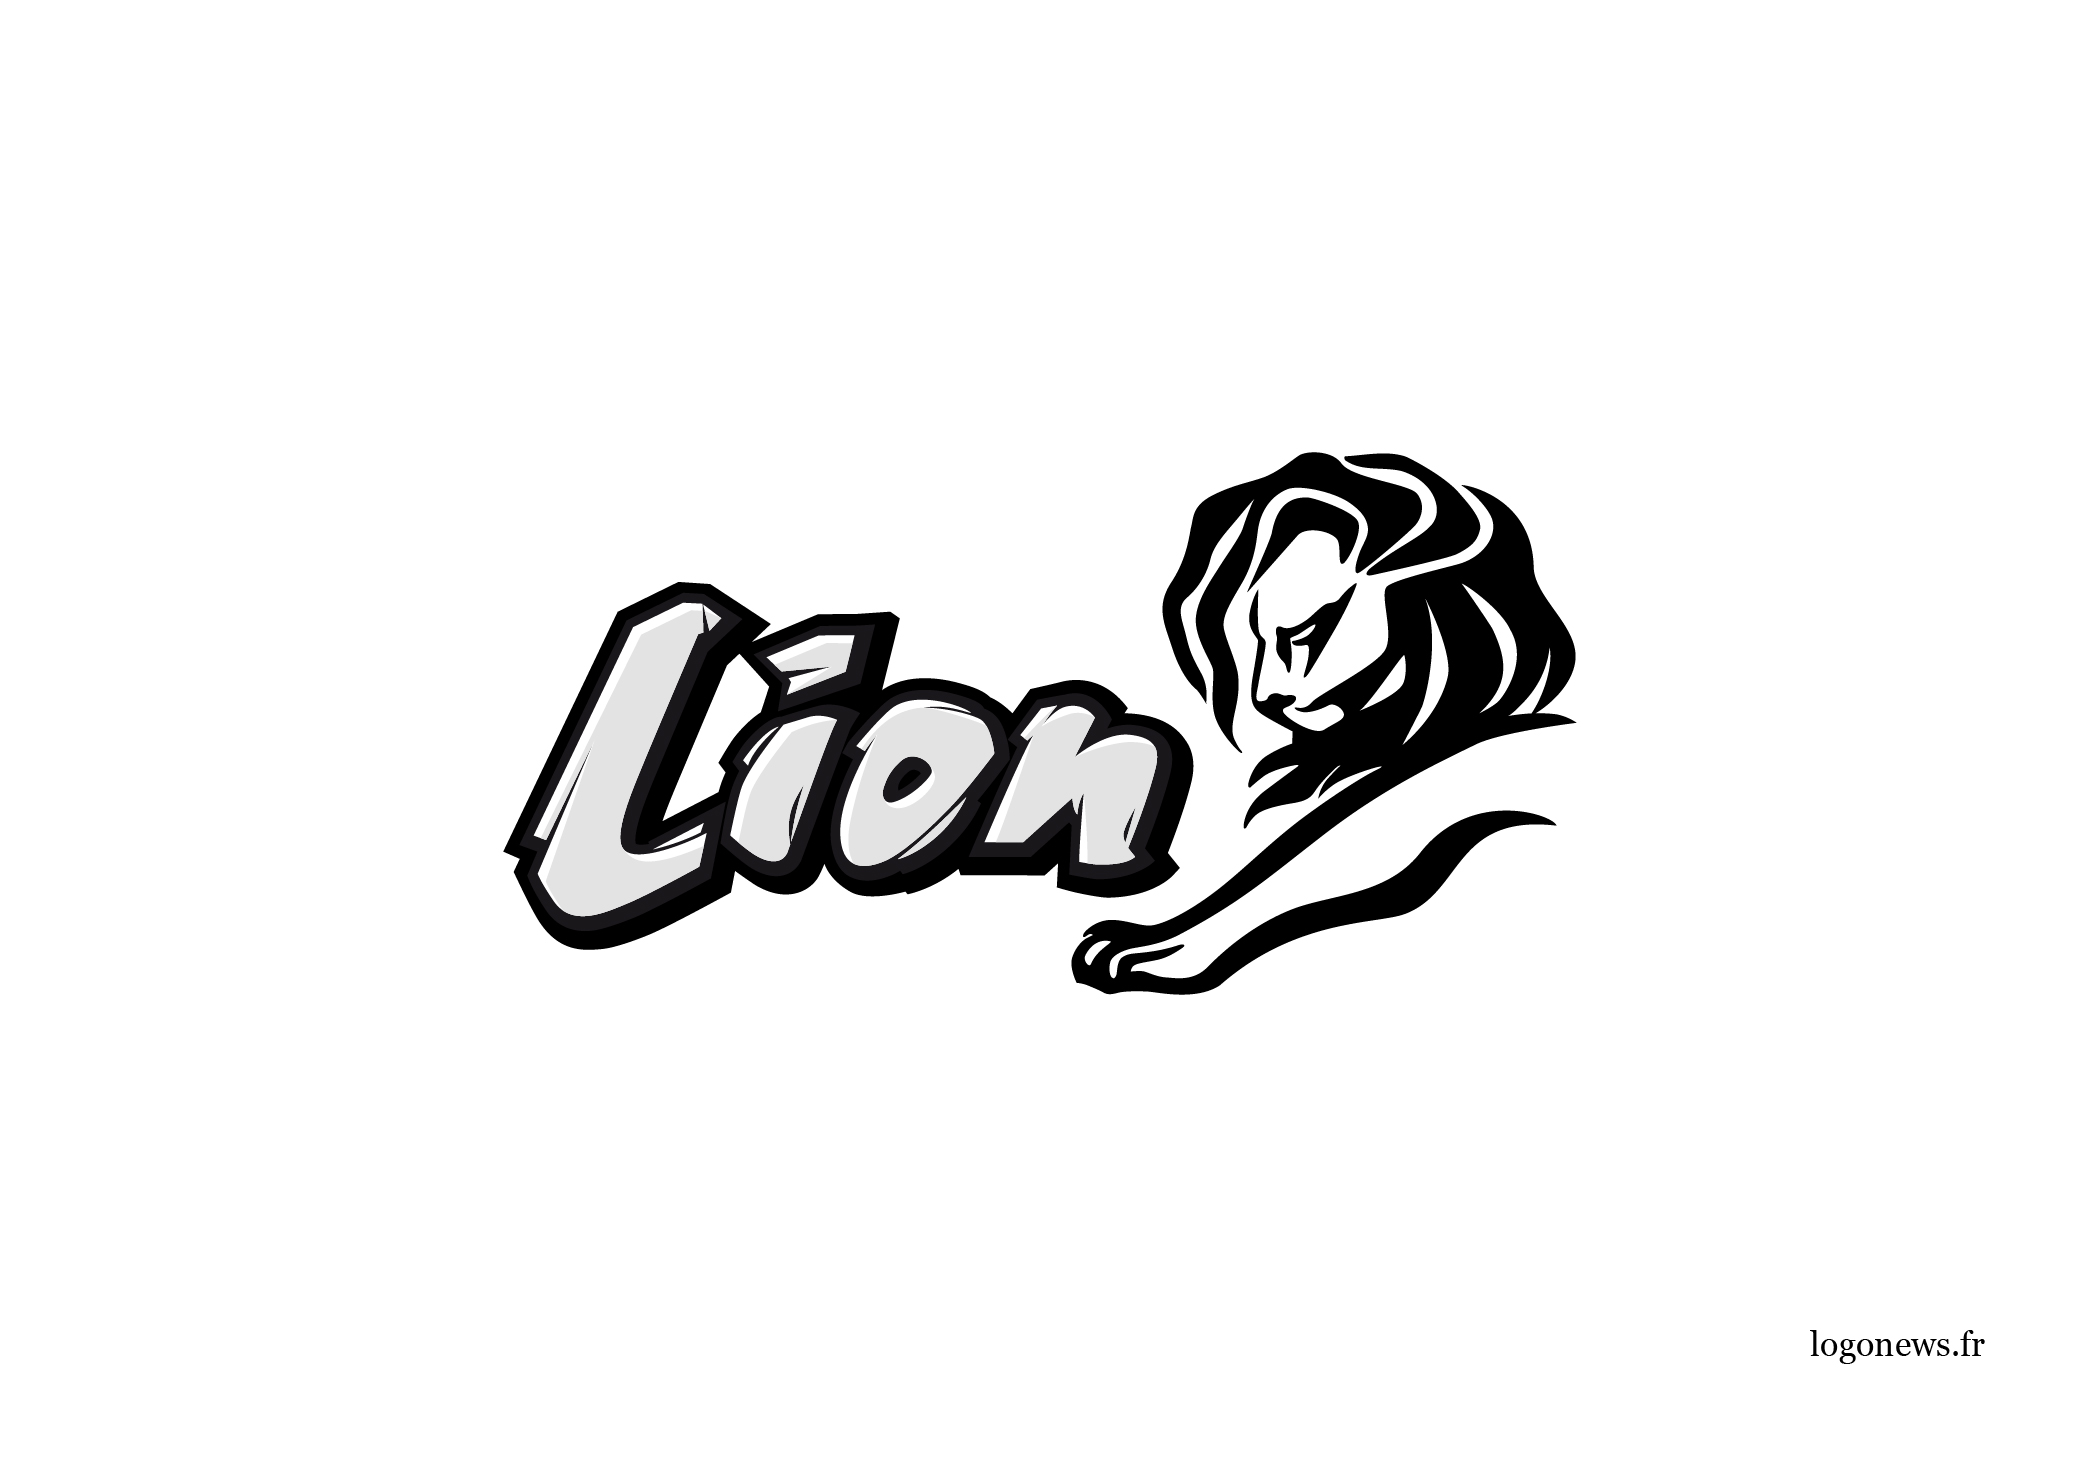 15_ logonews_remix_lion_cannes_publicite - copie